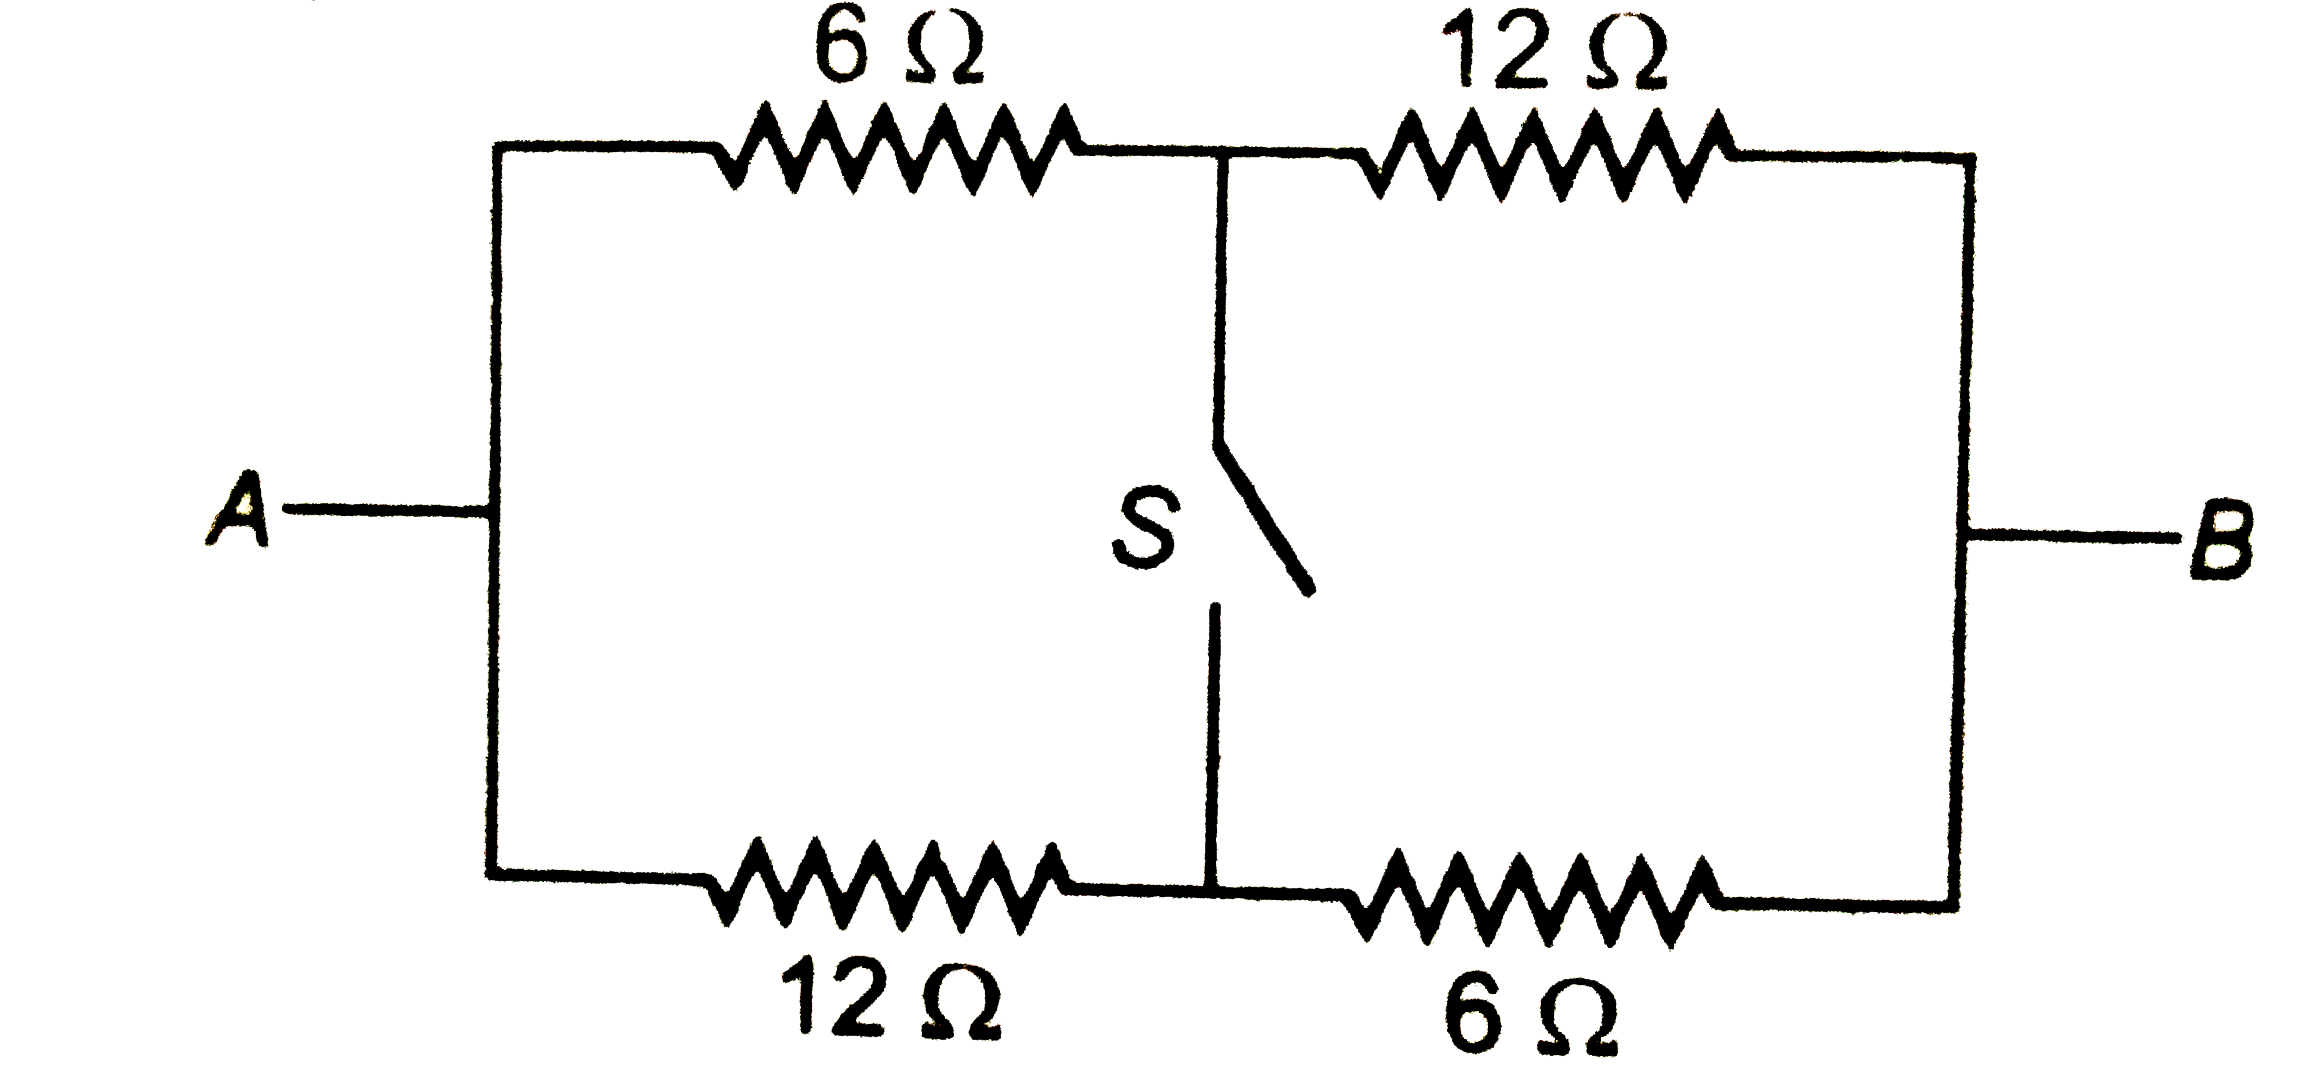 चित्र में बिंदु A व B के बीच तुल्य प्रतिरोध ज्ञात करो जब स्विच (i ) बंद (ii) खुला है ।